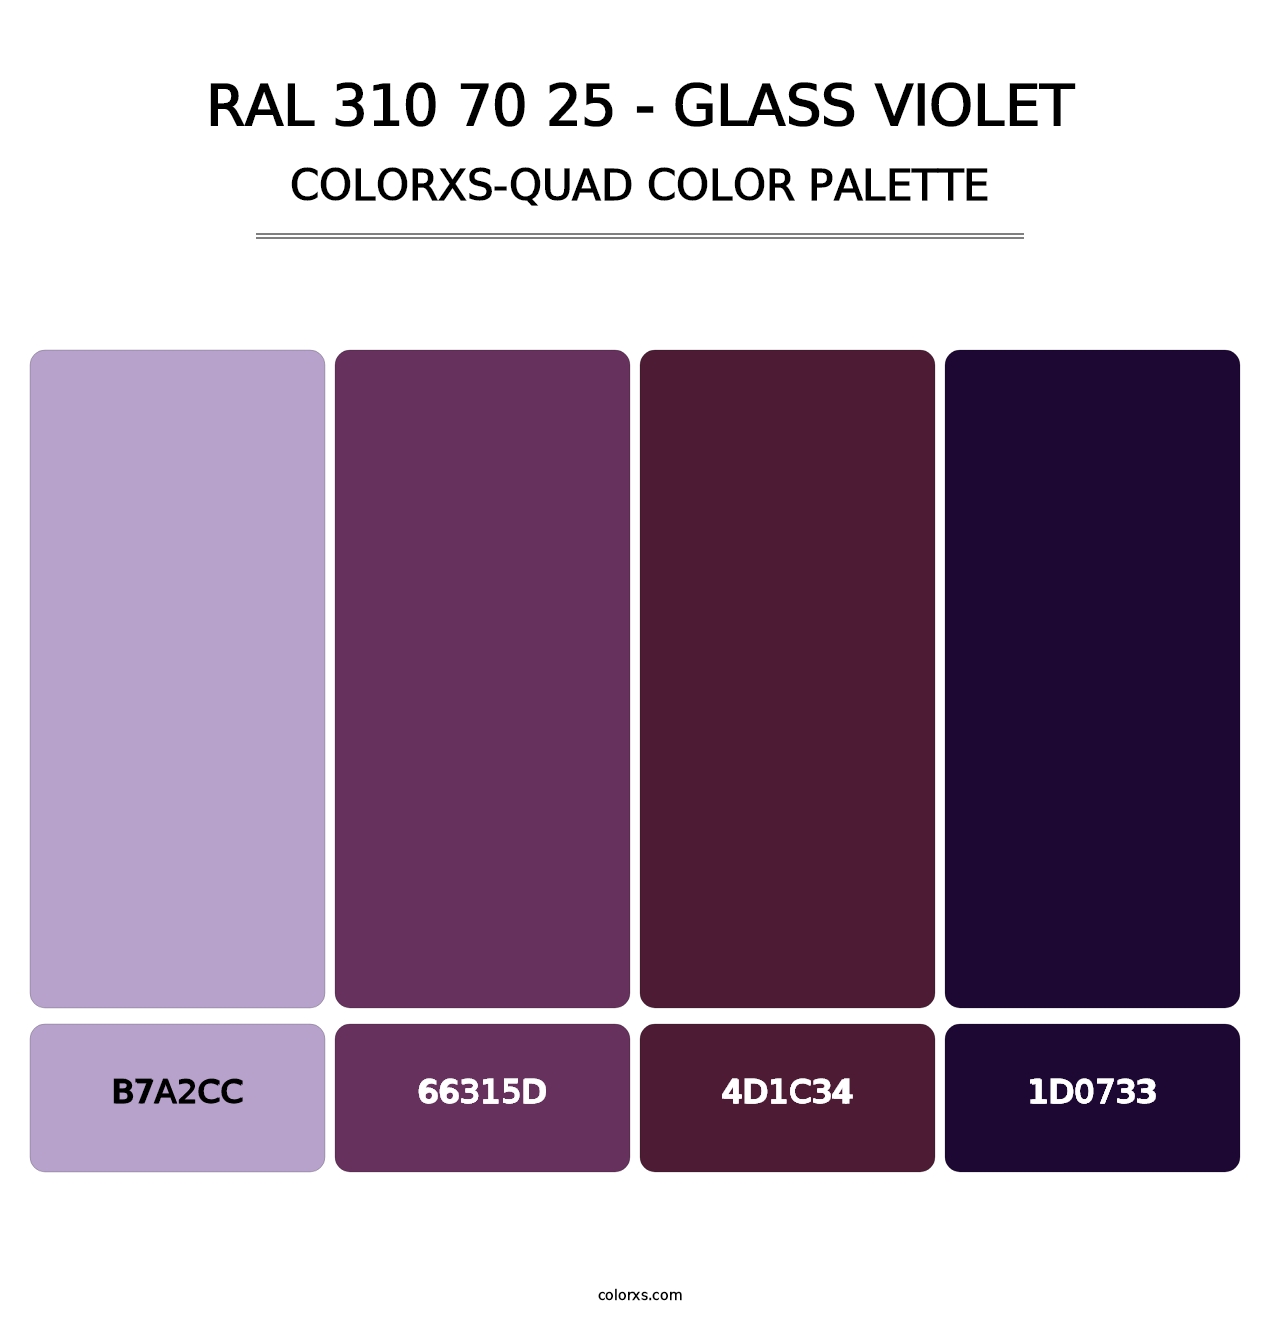 RAL 310 70 25 - Glass Violet - Colorxs Quad Palette